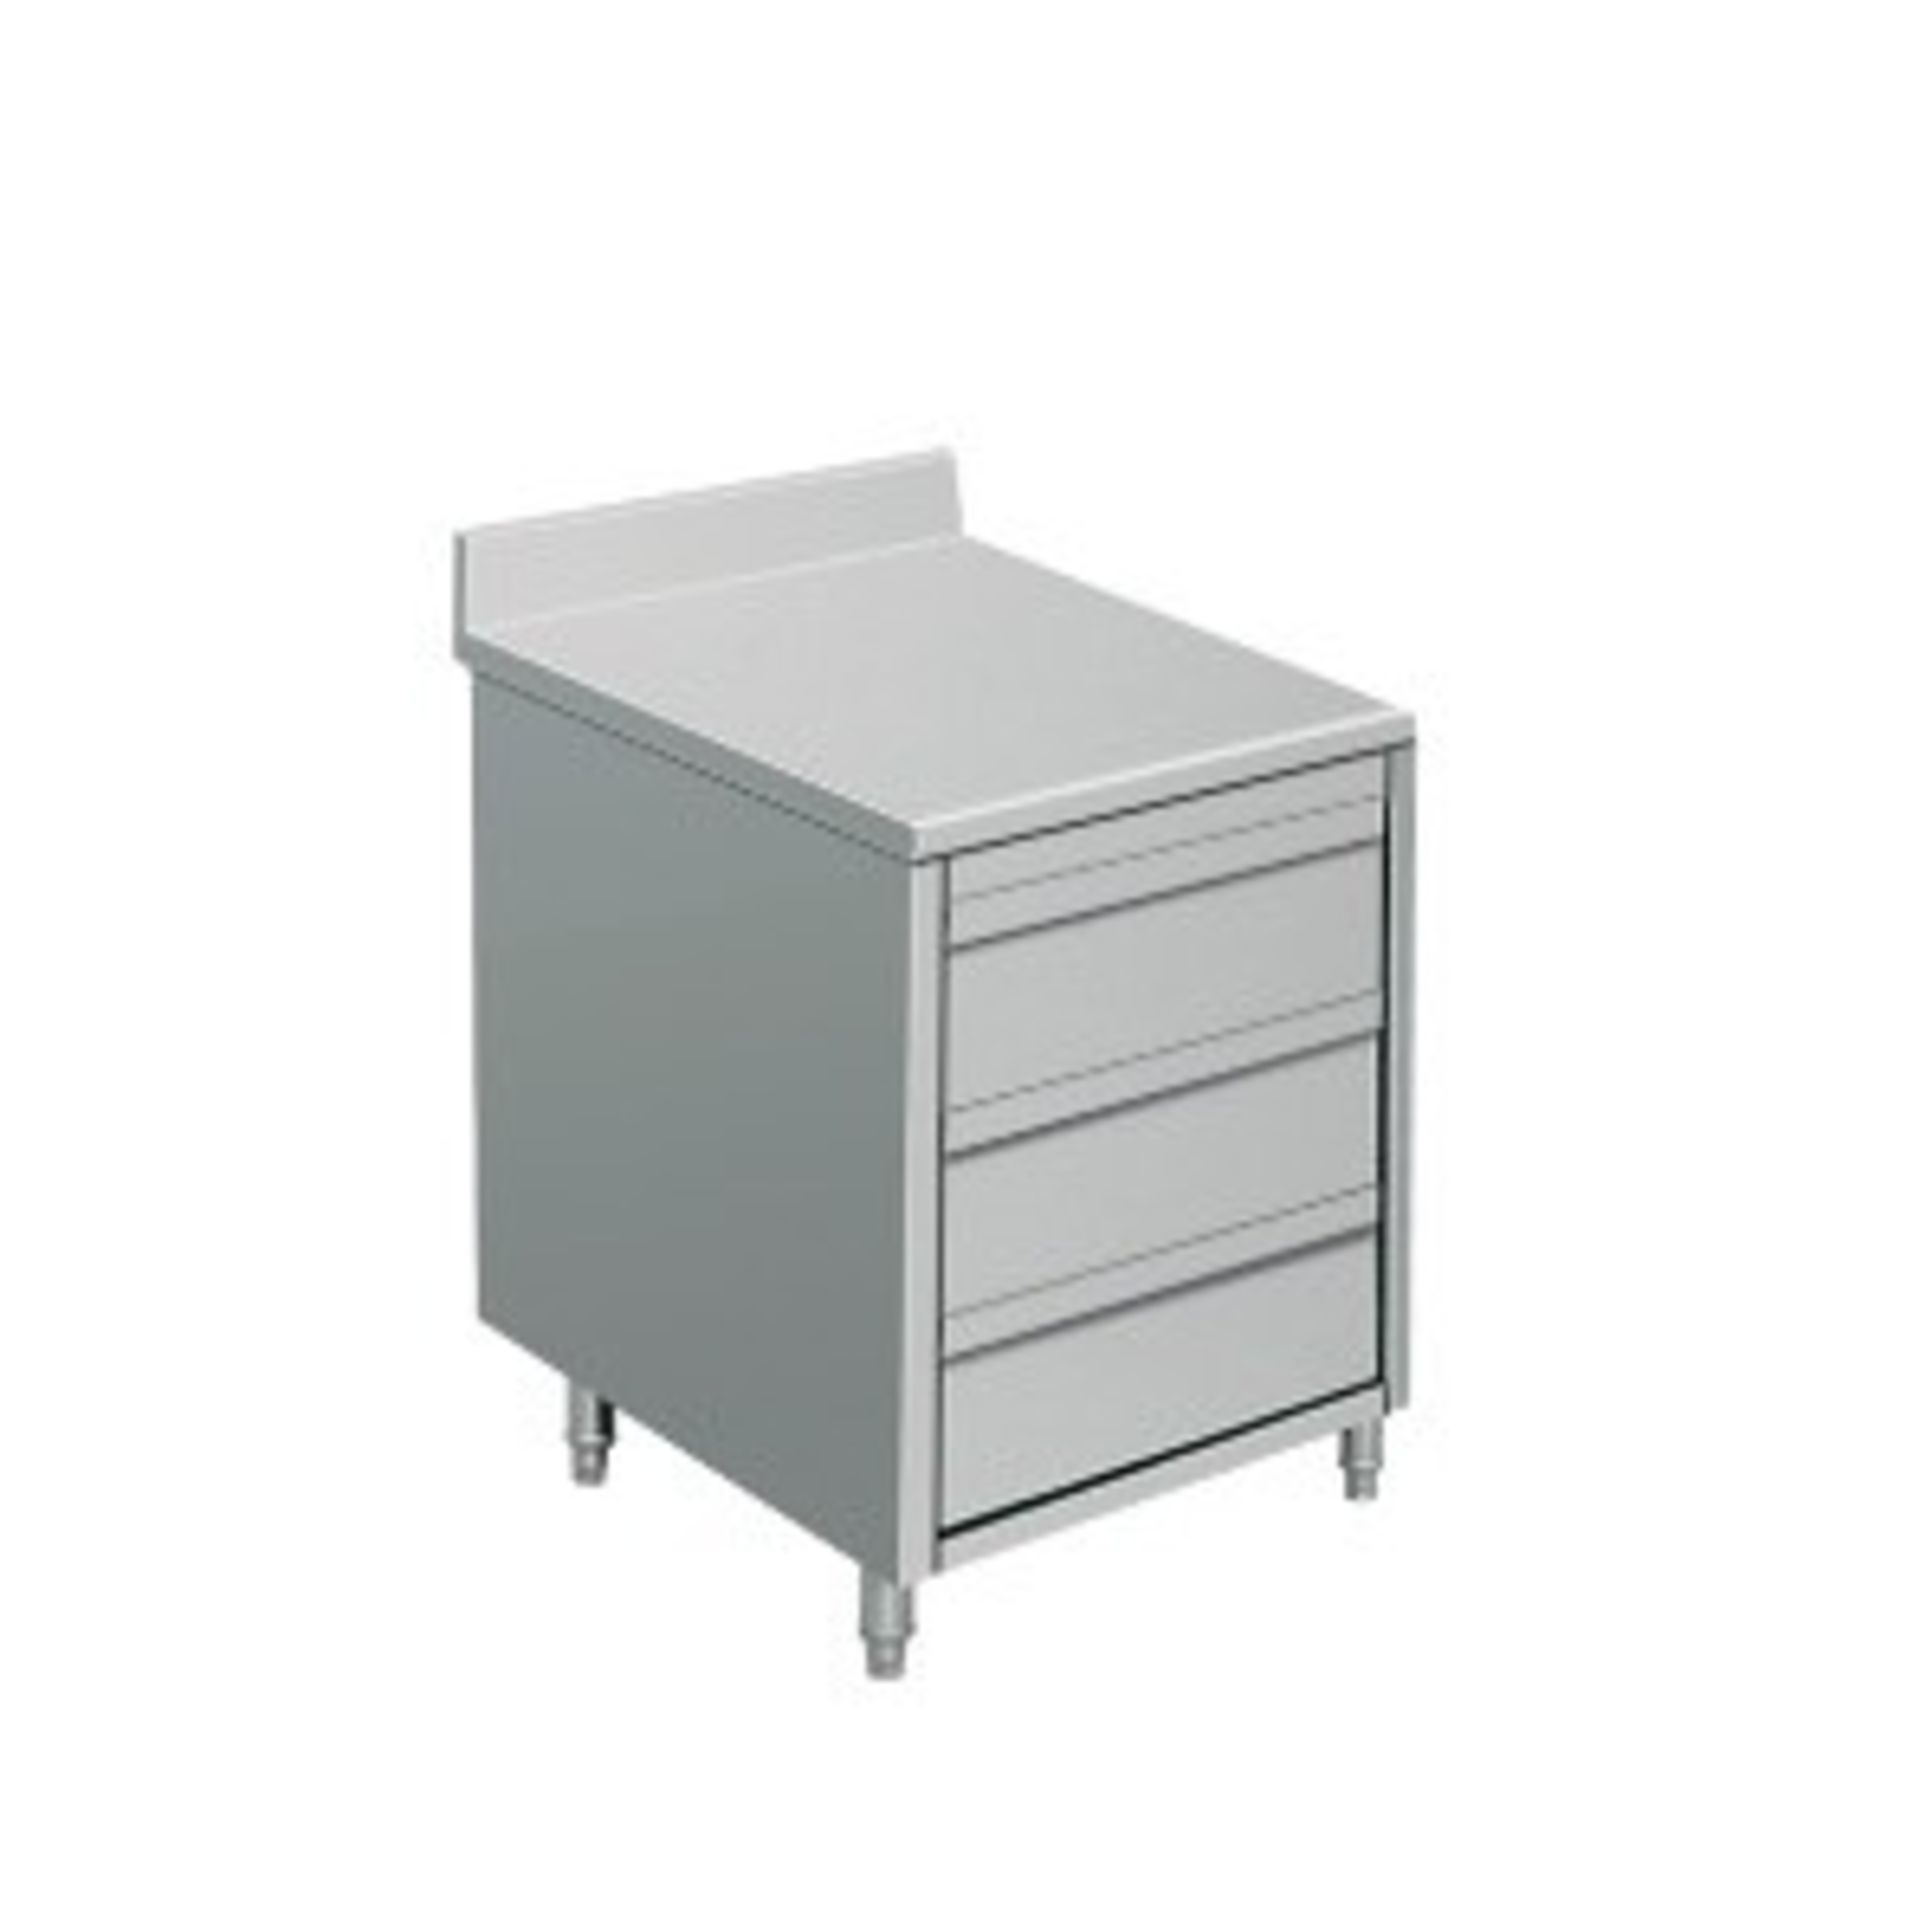 Drawer Cabinet Model#:THSS3R56 L*W*H (inch):19.7*23.7*33.5 Weight (lb)60